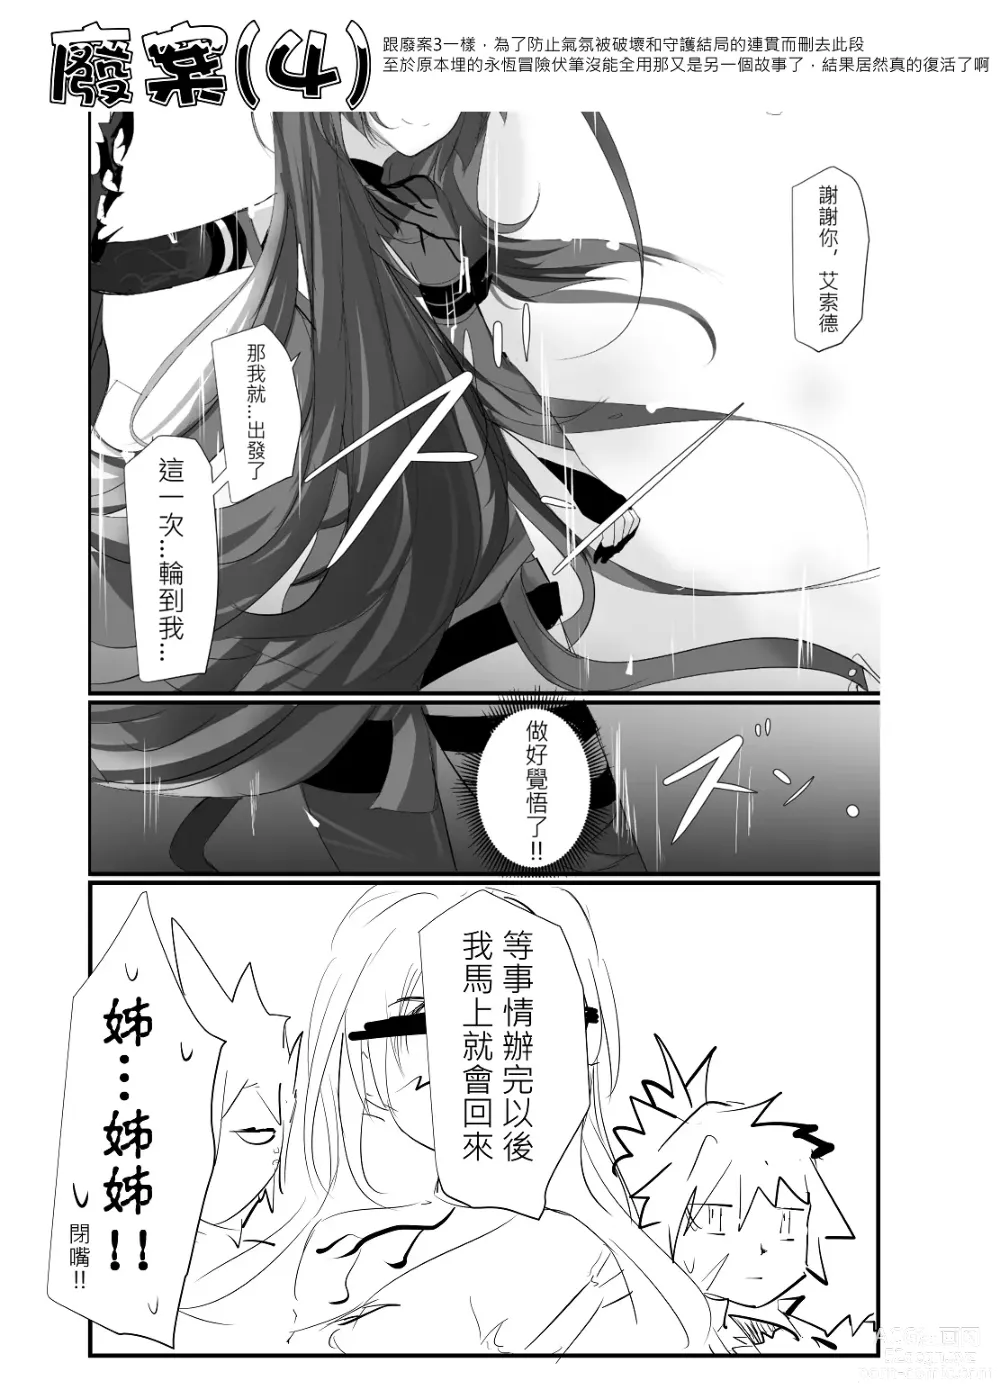 Page 107 of doujinshi ELSWORD:TYPE-V (decensored)